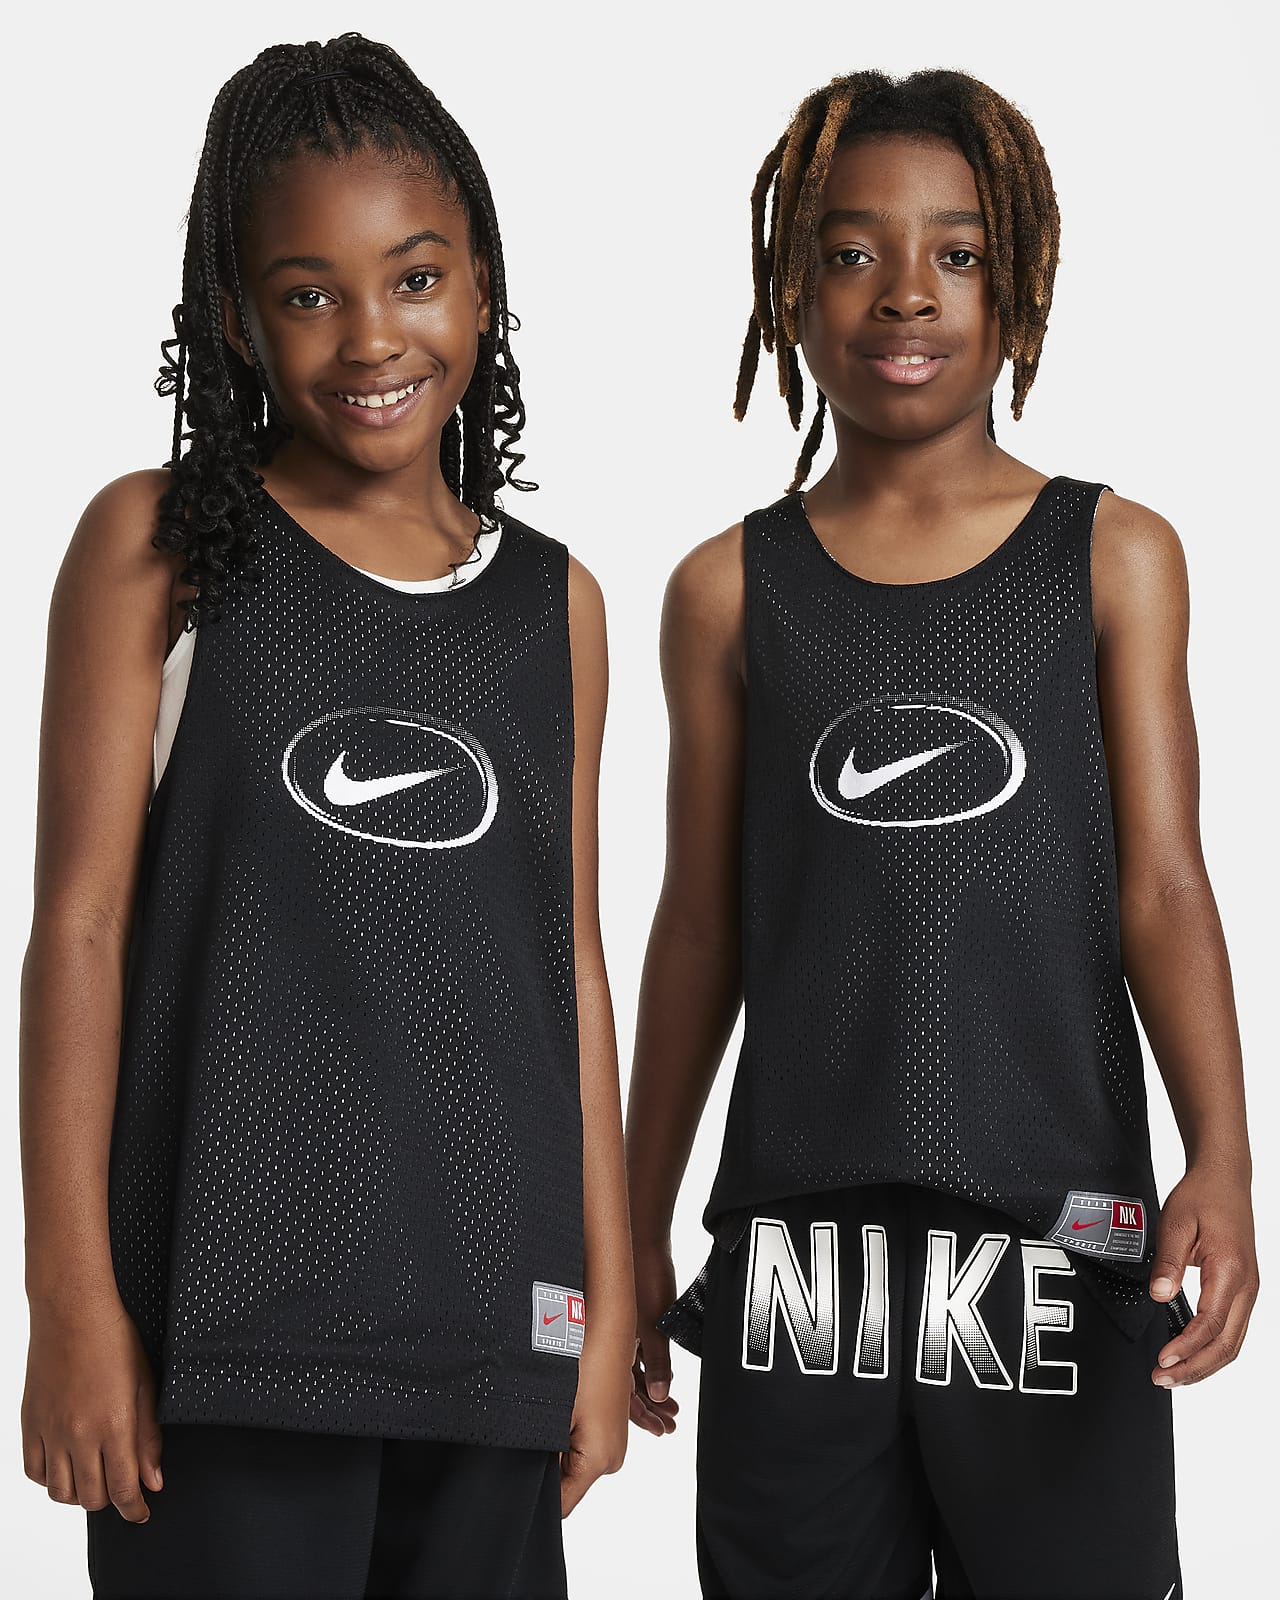 Nike Culture of Basketball Çift Taraflı Genç Çocuk Forması